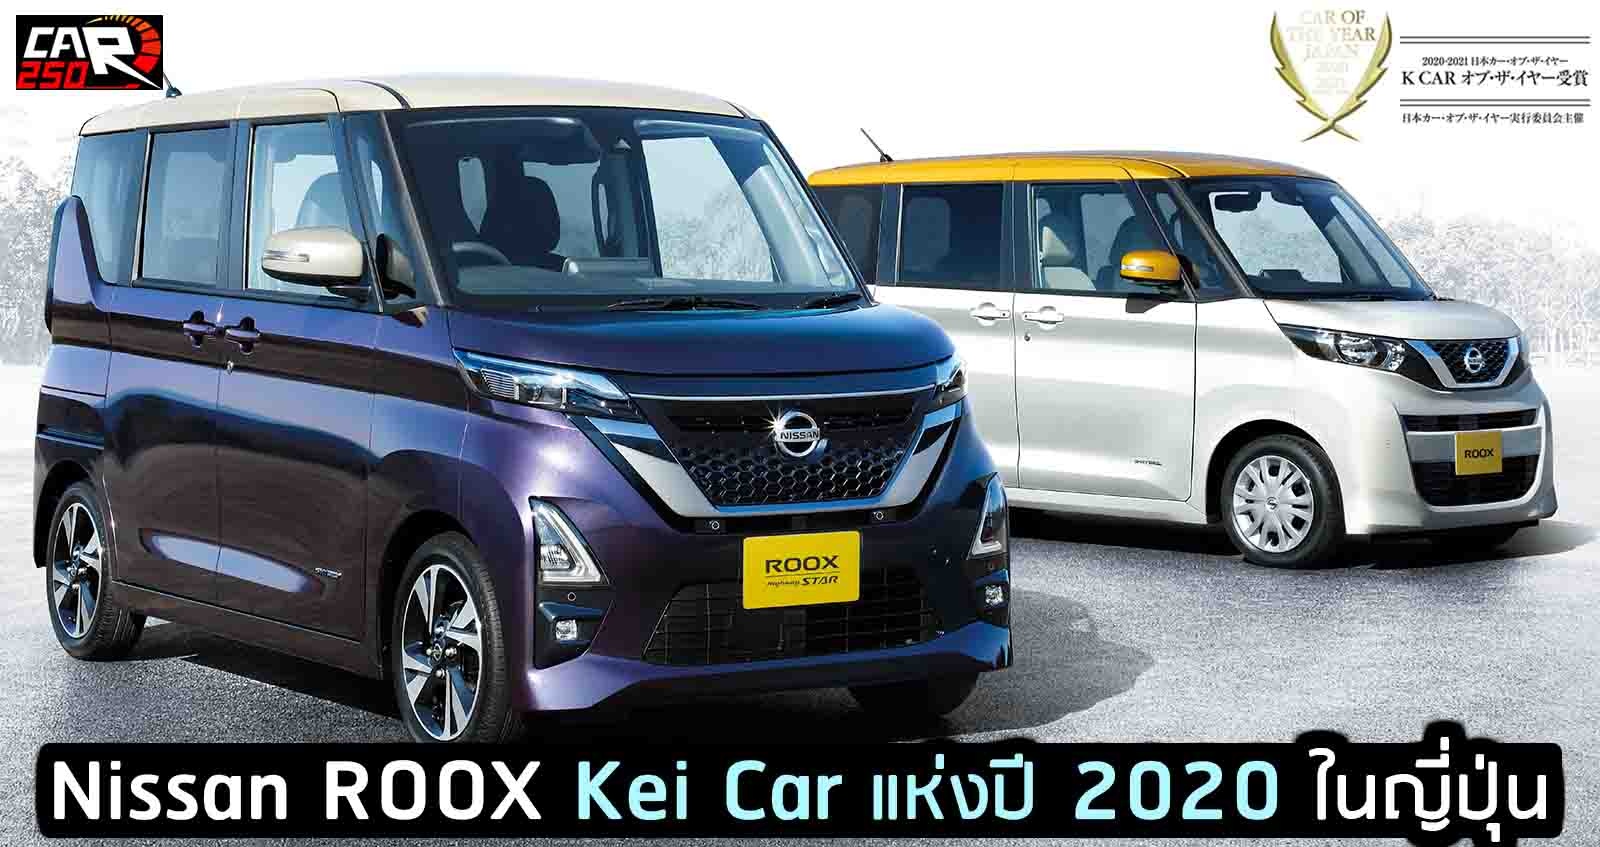 Nissan Roox ได้รางวัล Kei Car แห่งปี 2020 ในญี่ปุ่น